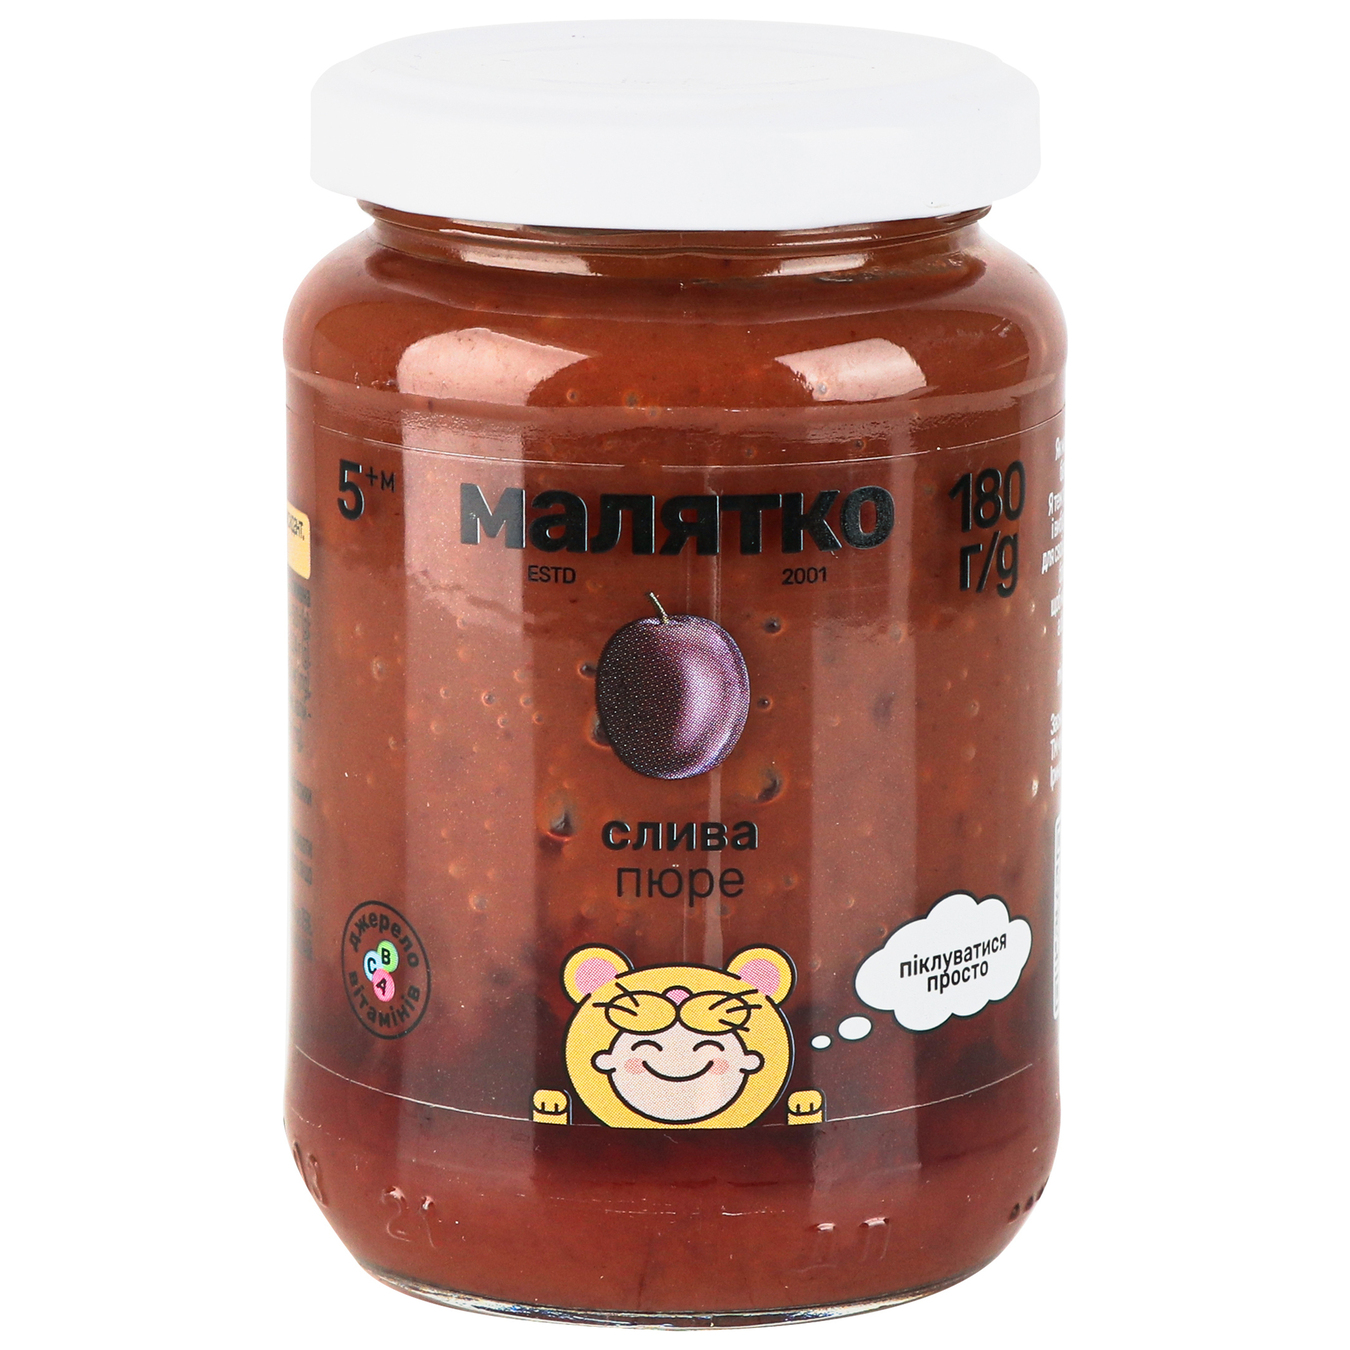 Malyatko for children from 5 months plum puree 180g 2